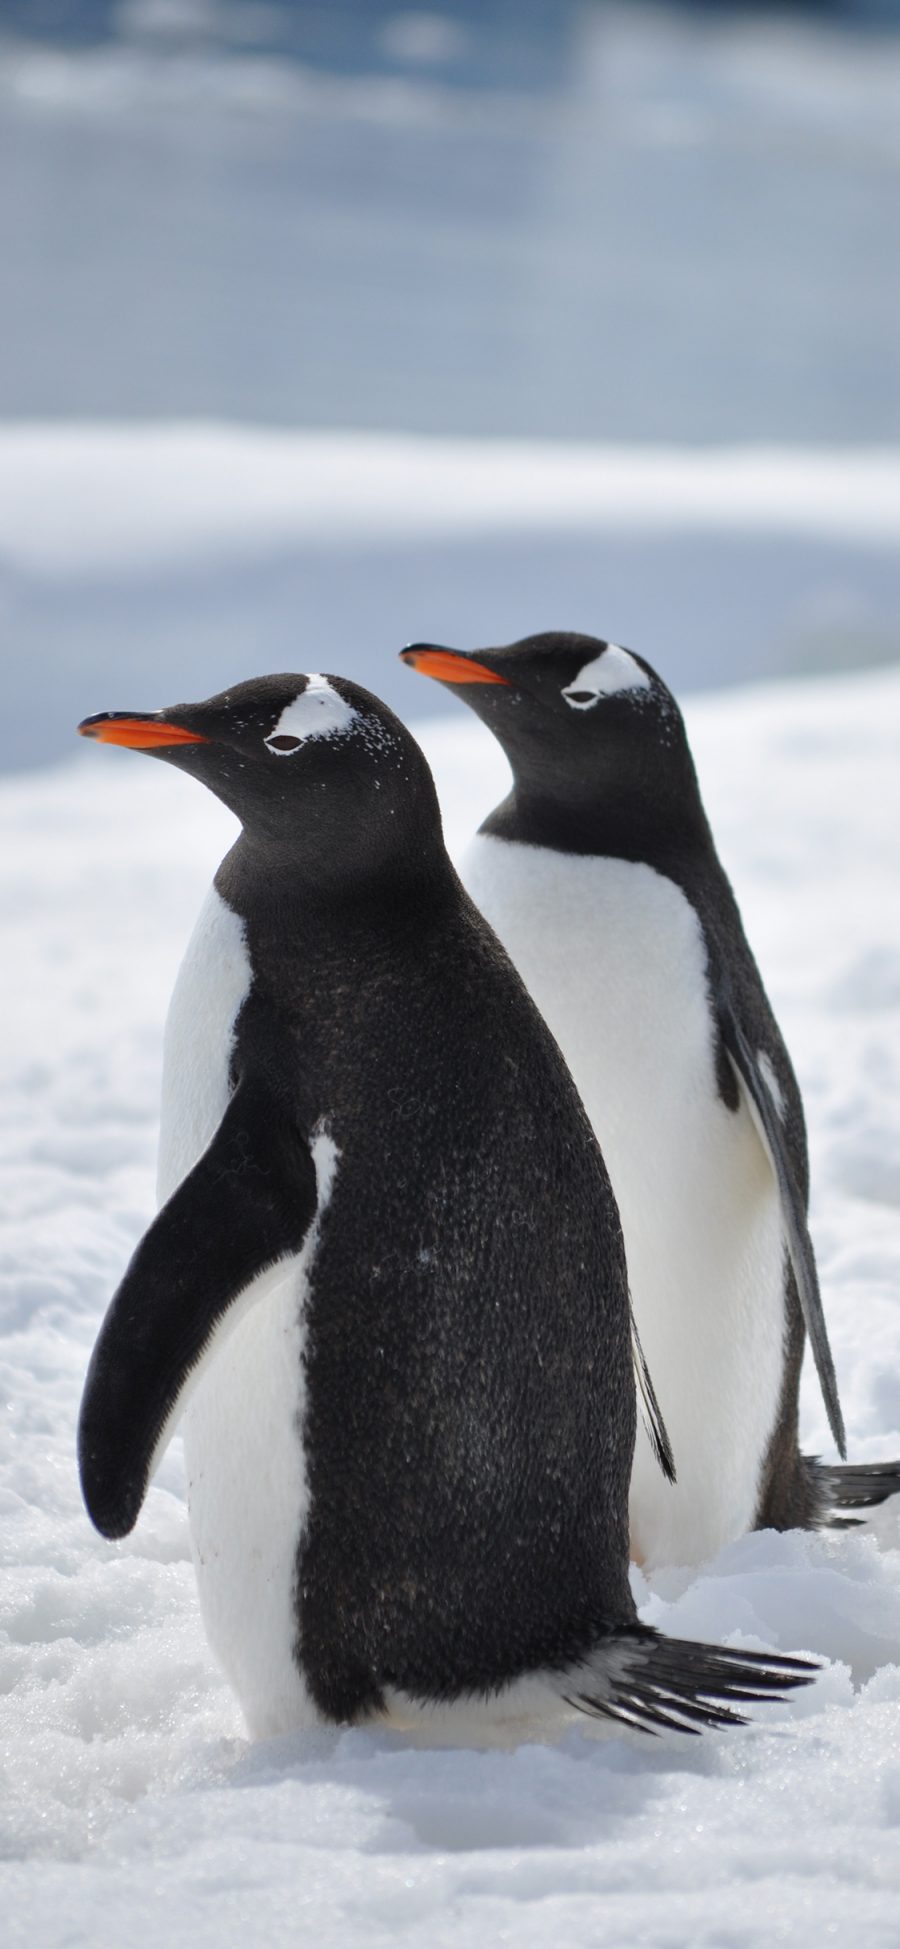 [2436×1125]企鹅 南极 雪地 可爱 萌 苹果手机壁纸图片